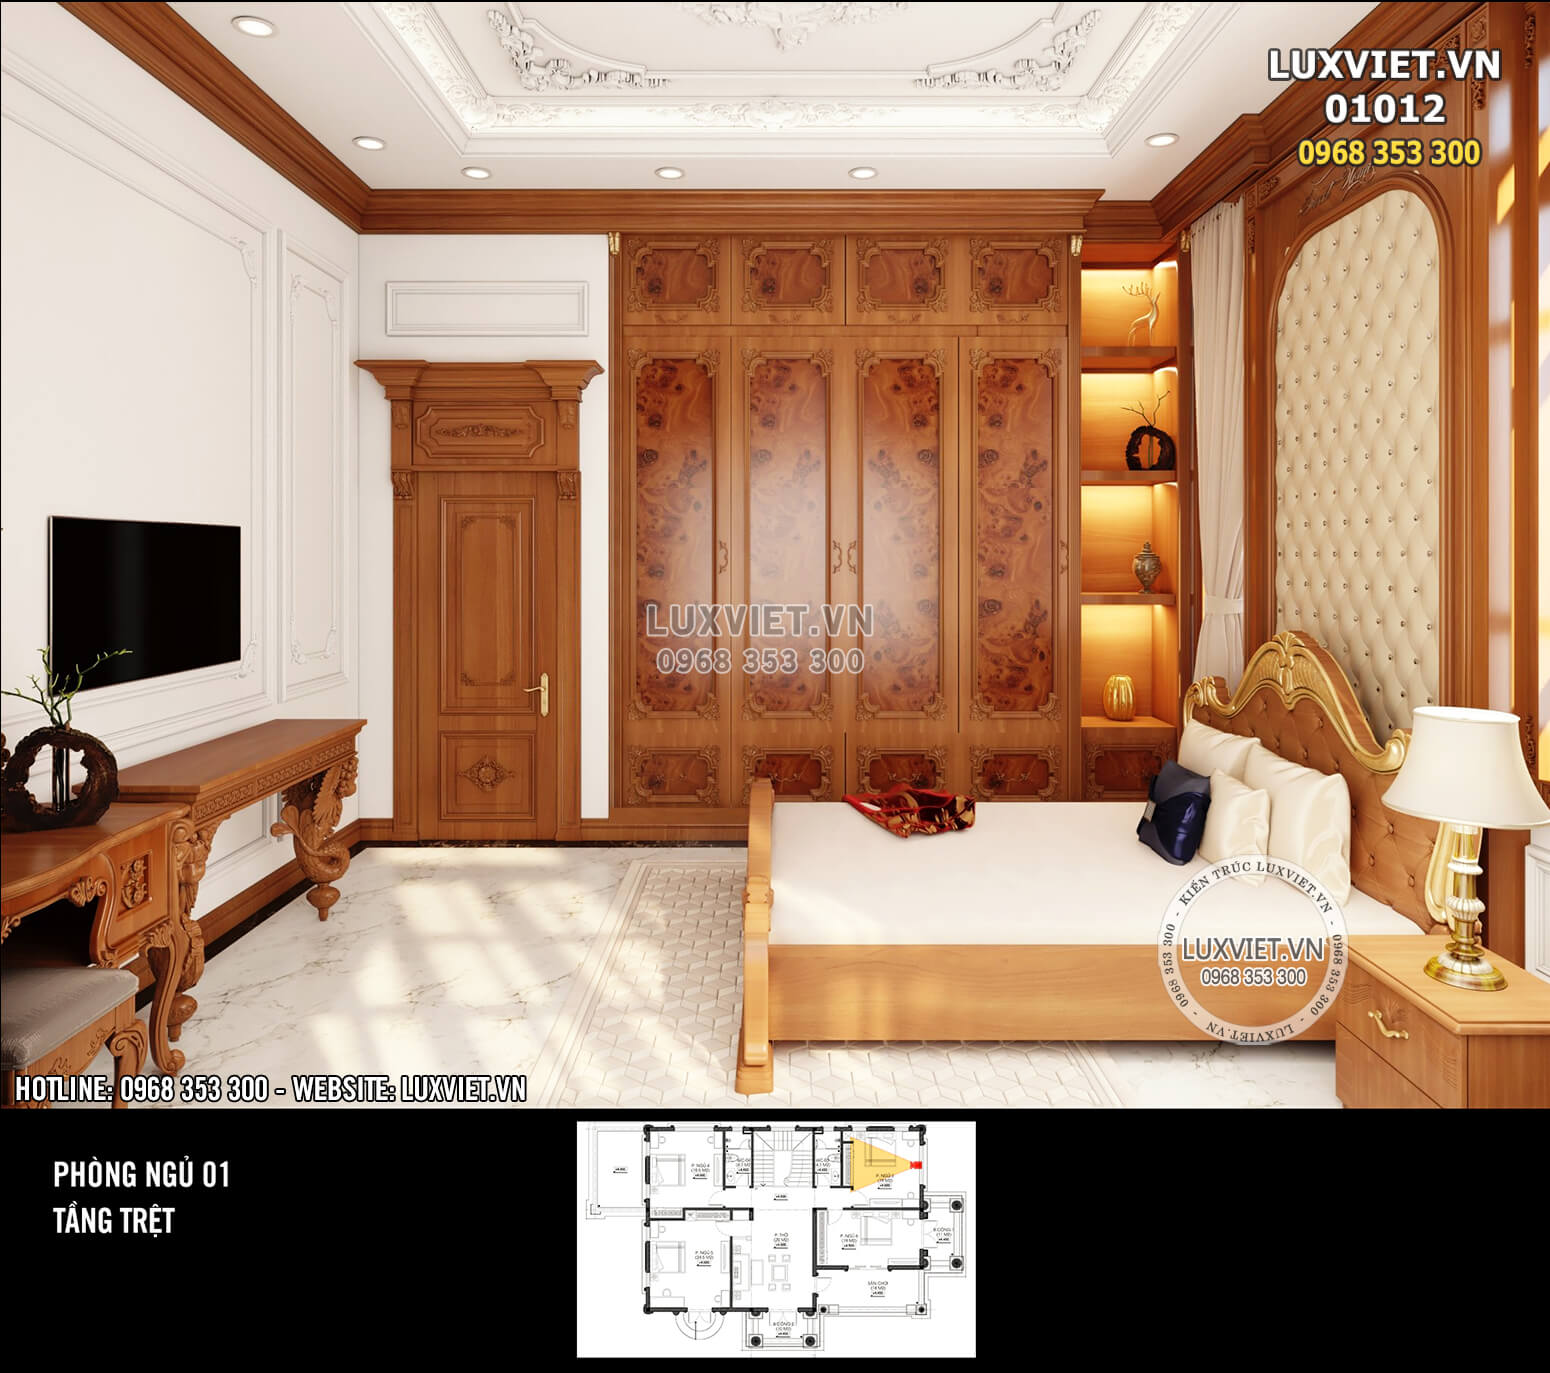 Hình ảnh: Không gian phòng được thiết kế đủ dành cho các món đồ nội thất cơ bản